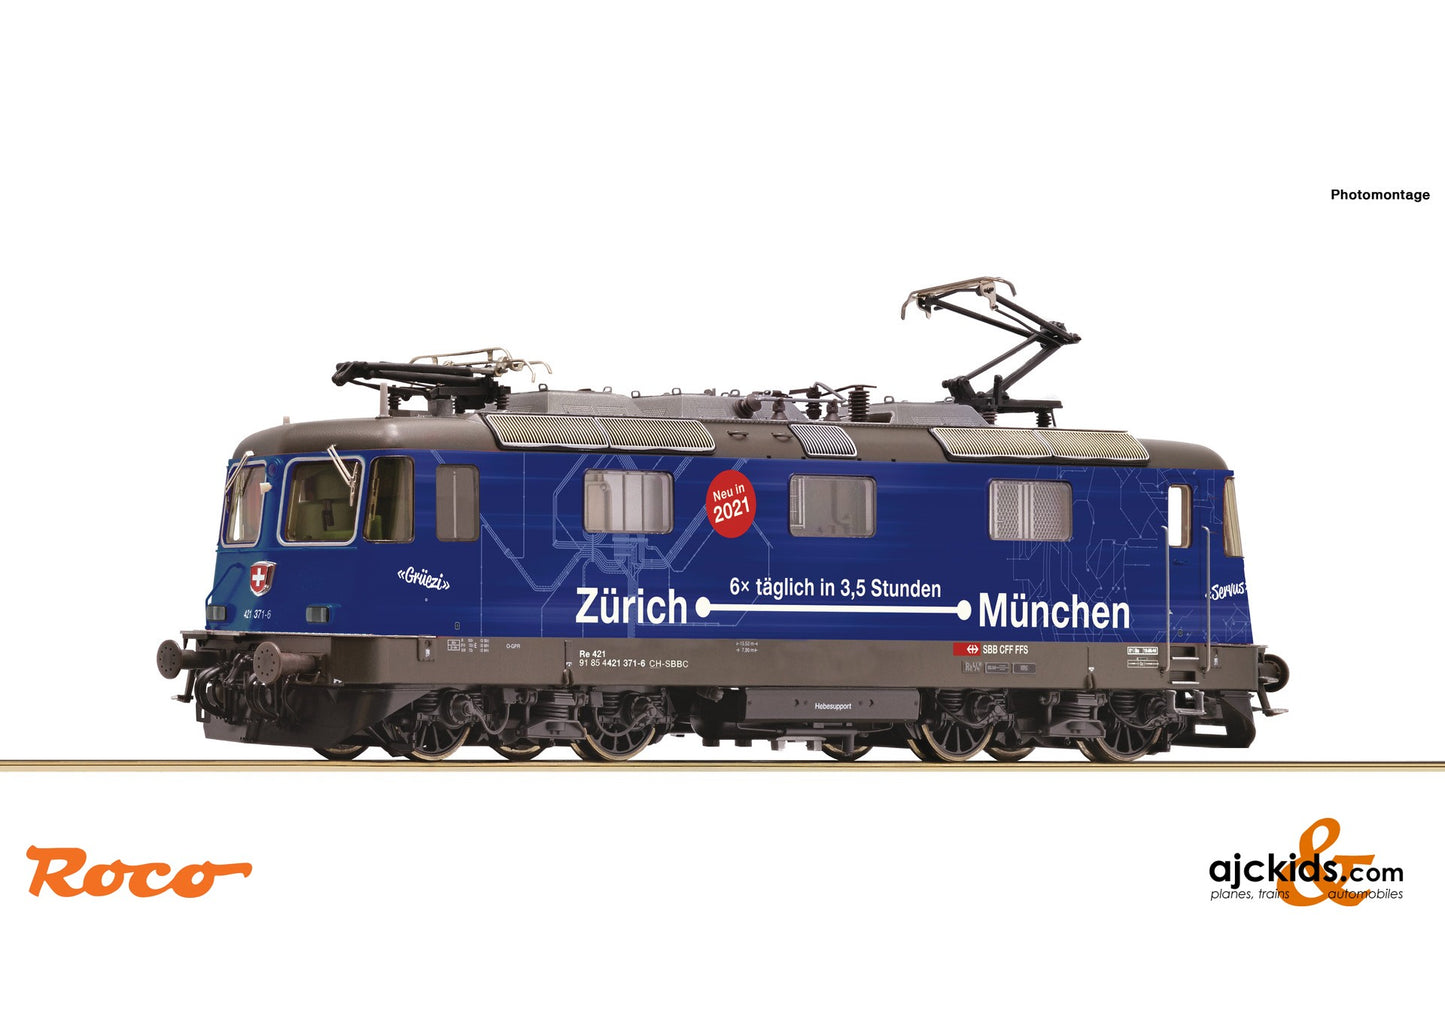 Roco 71413 -Electric locomotive Re 421 371-6, SBB